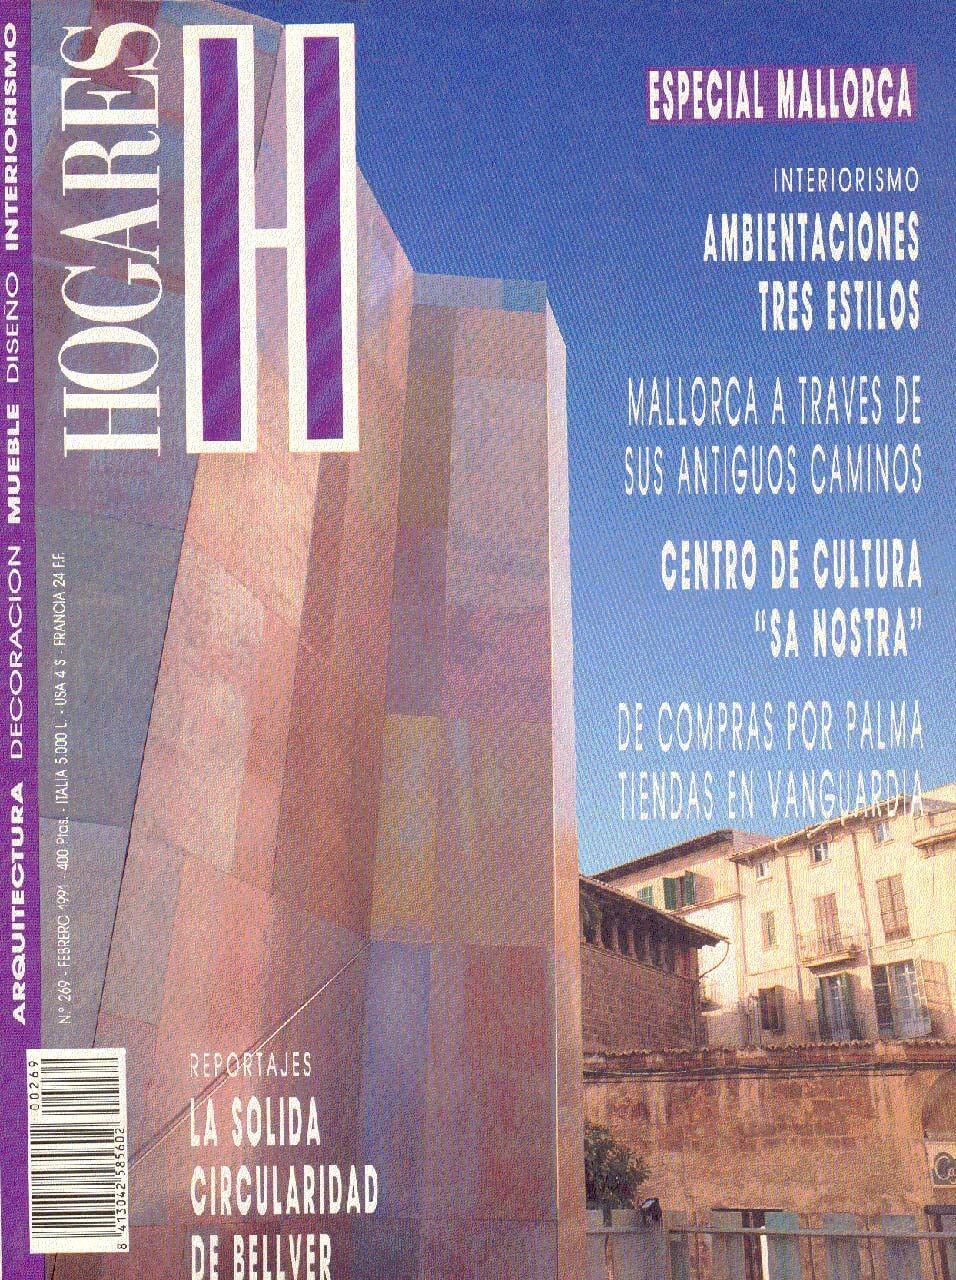 revista 1991 hogares antonio obrador 01